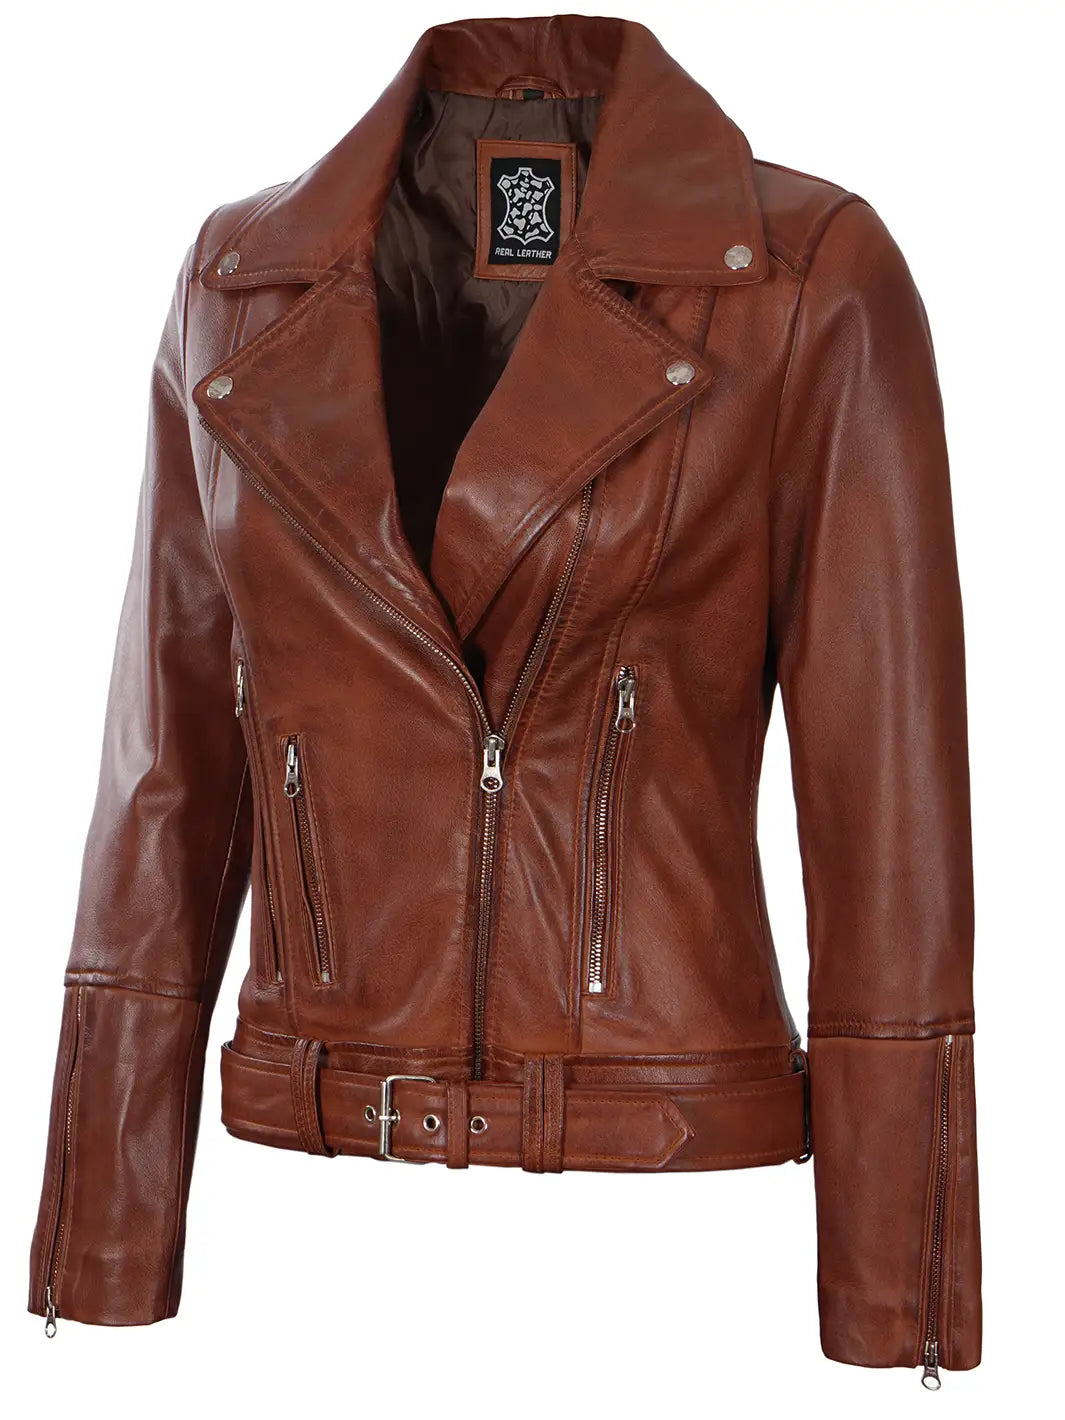 Womens leather biker jacket